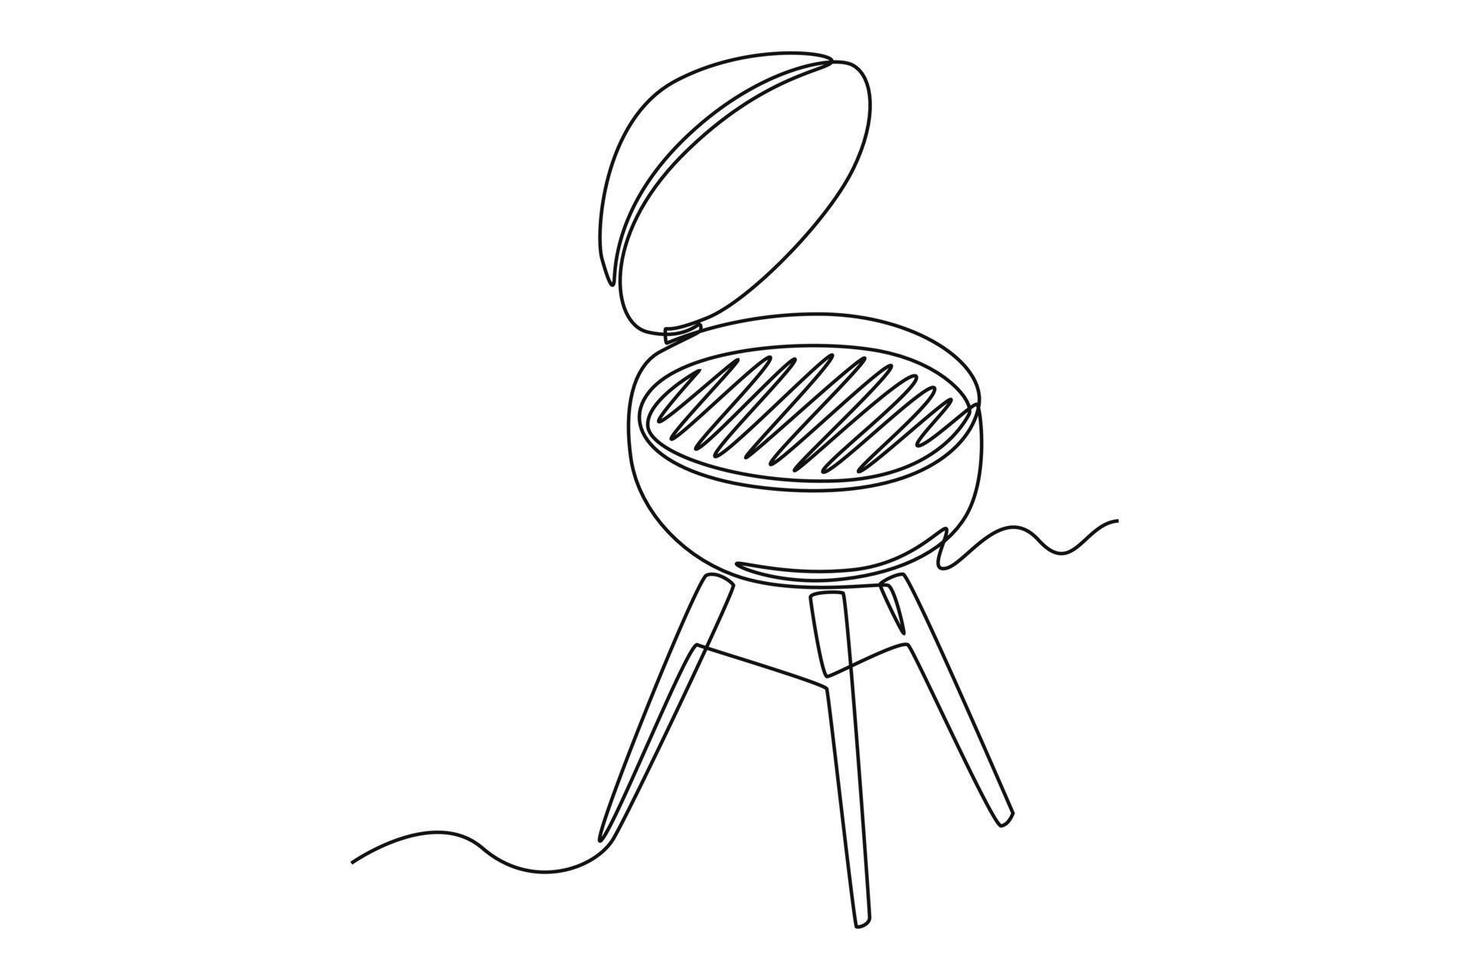 solteiro 1 linha desenhando churrasco grade. cozinhando utensílio conceito. contínuo linha desenhar Projeto gráfico vetor ilustração.